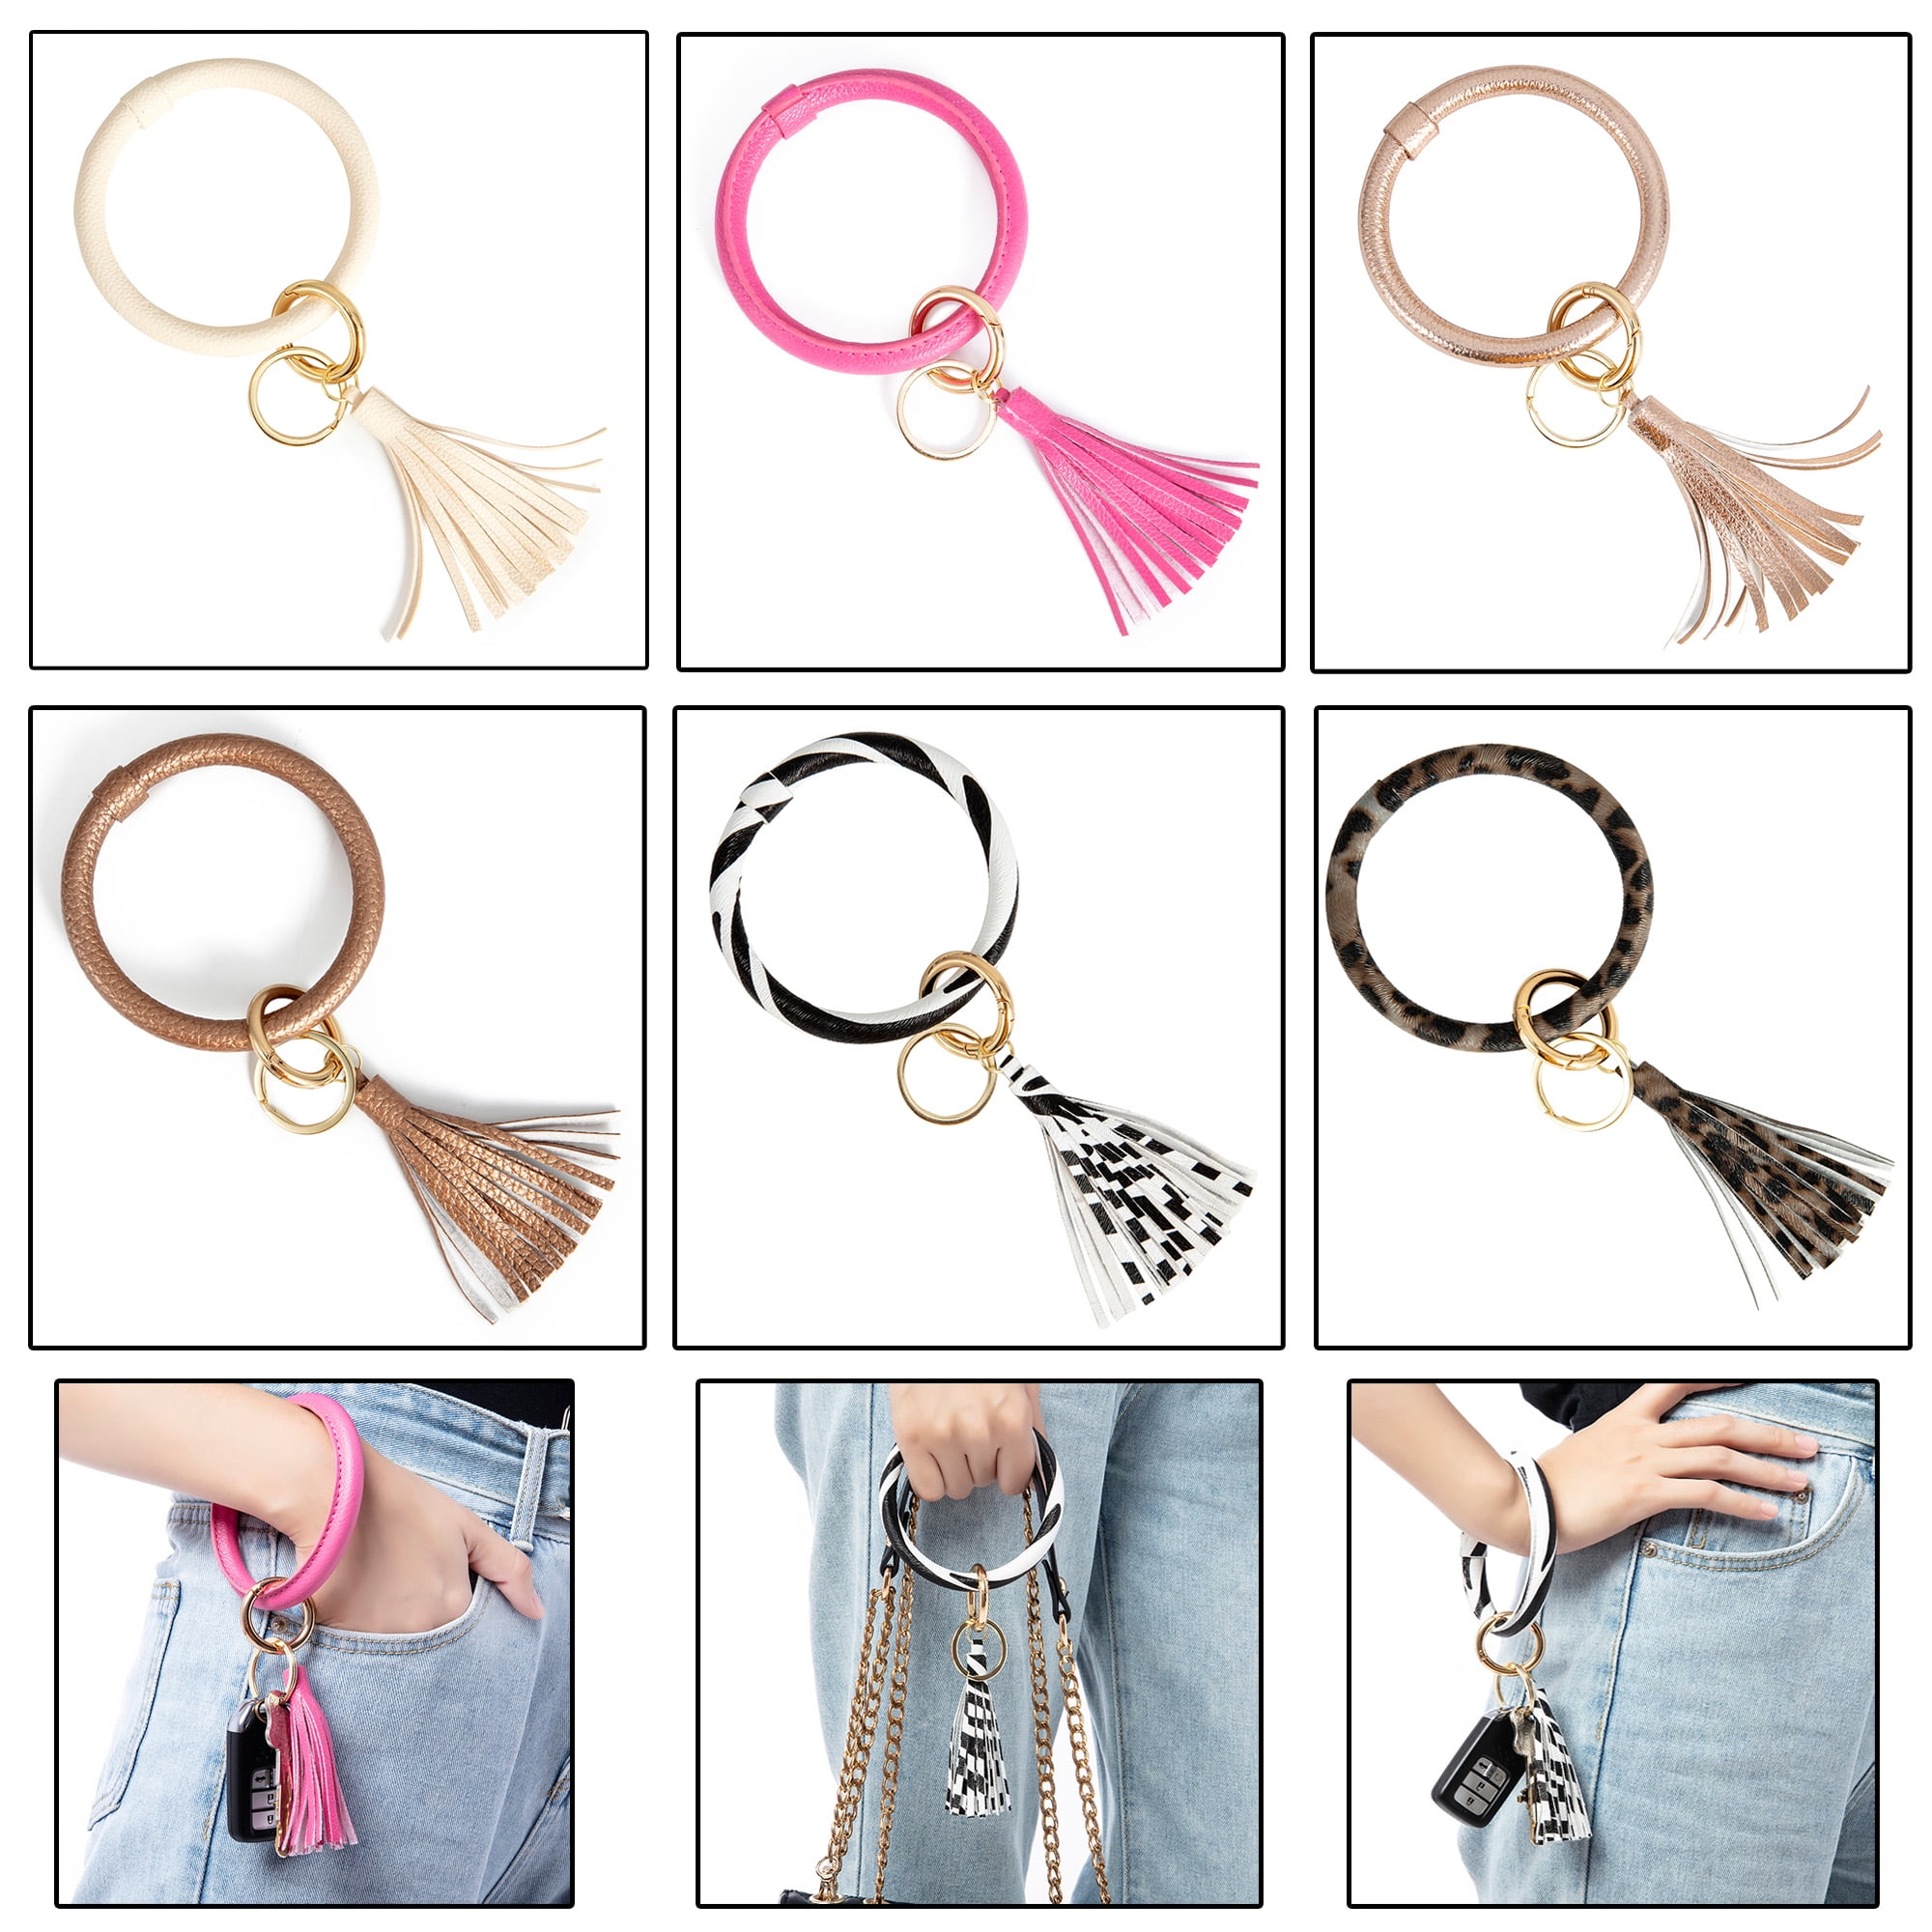 DODOING Women and Girls Leather Wristlet Keychain Bracelet Bangle Round Key  Ring Large Circle Tassel Key Chain Bracelet Holder for Women Girls 